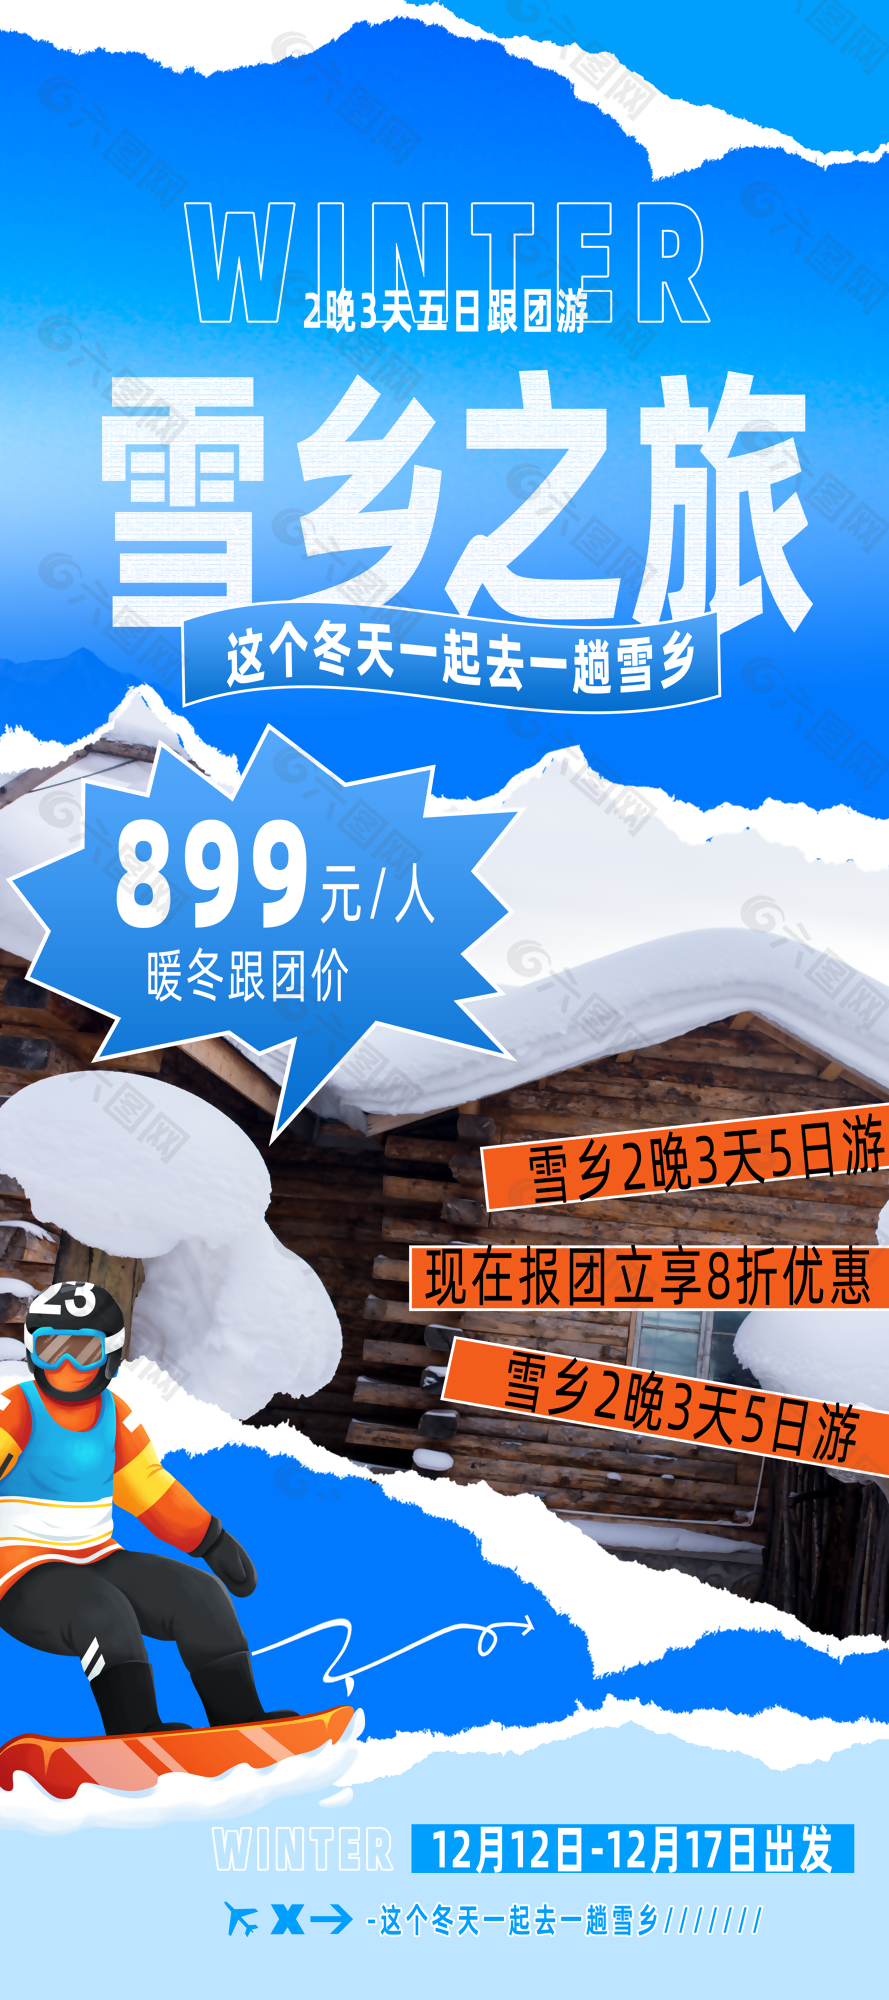 蓝色清新插画风雪乡之旅滑雪海报设计